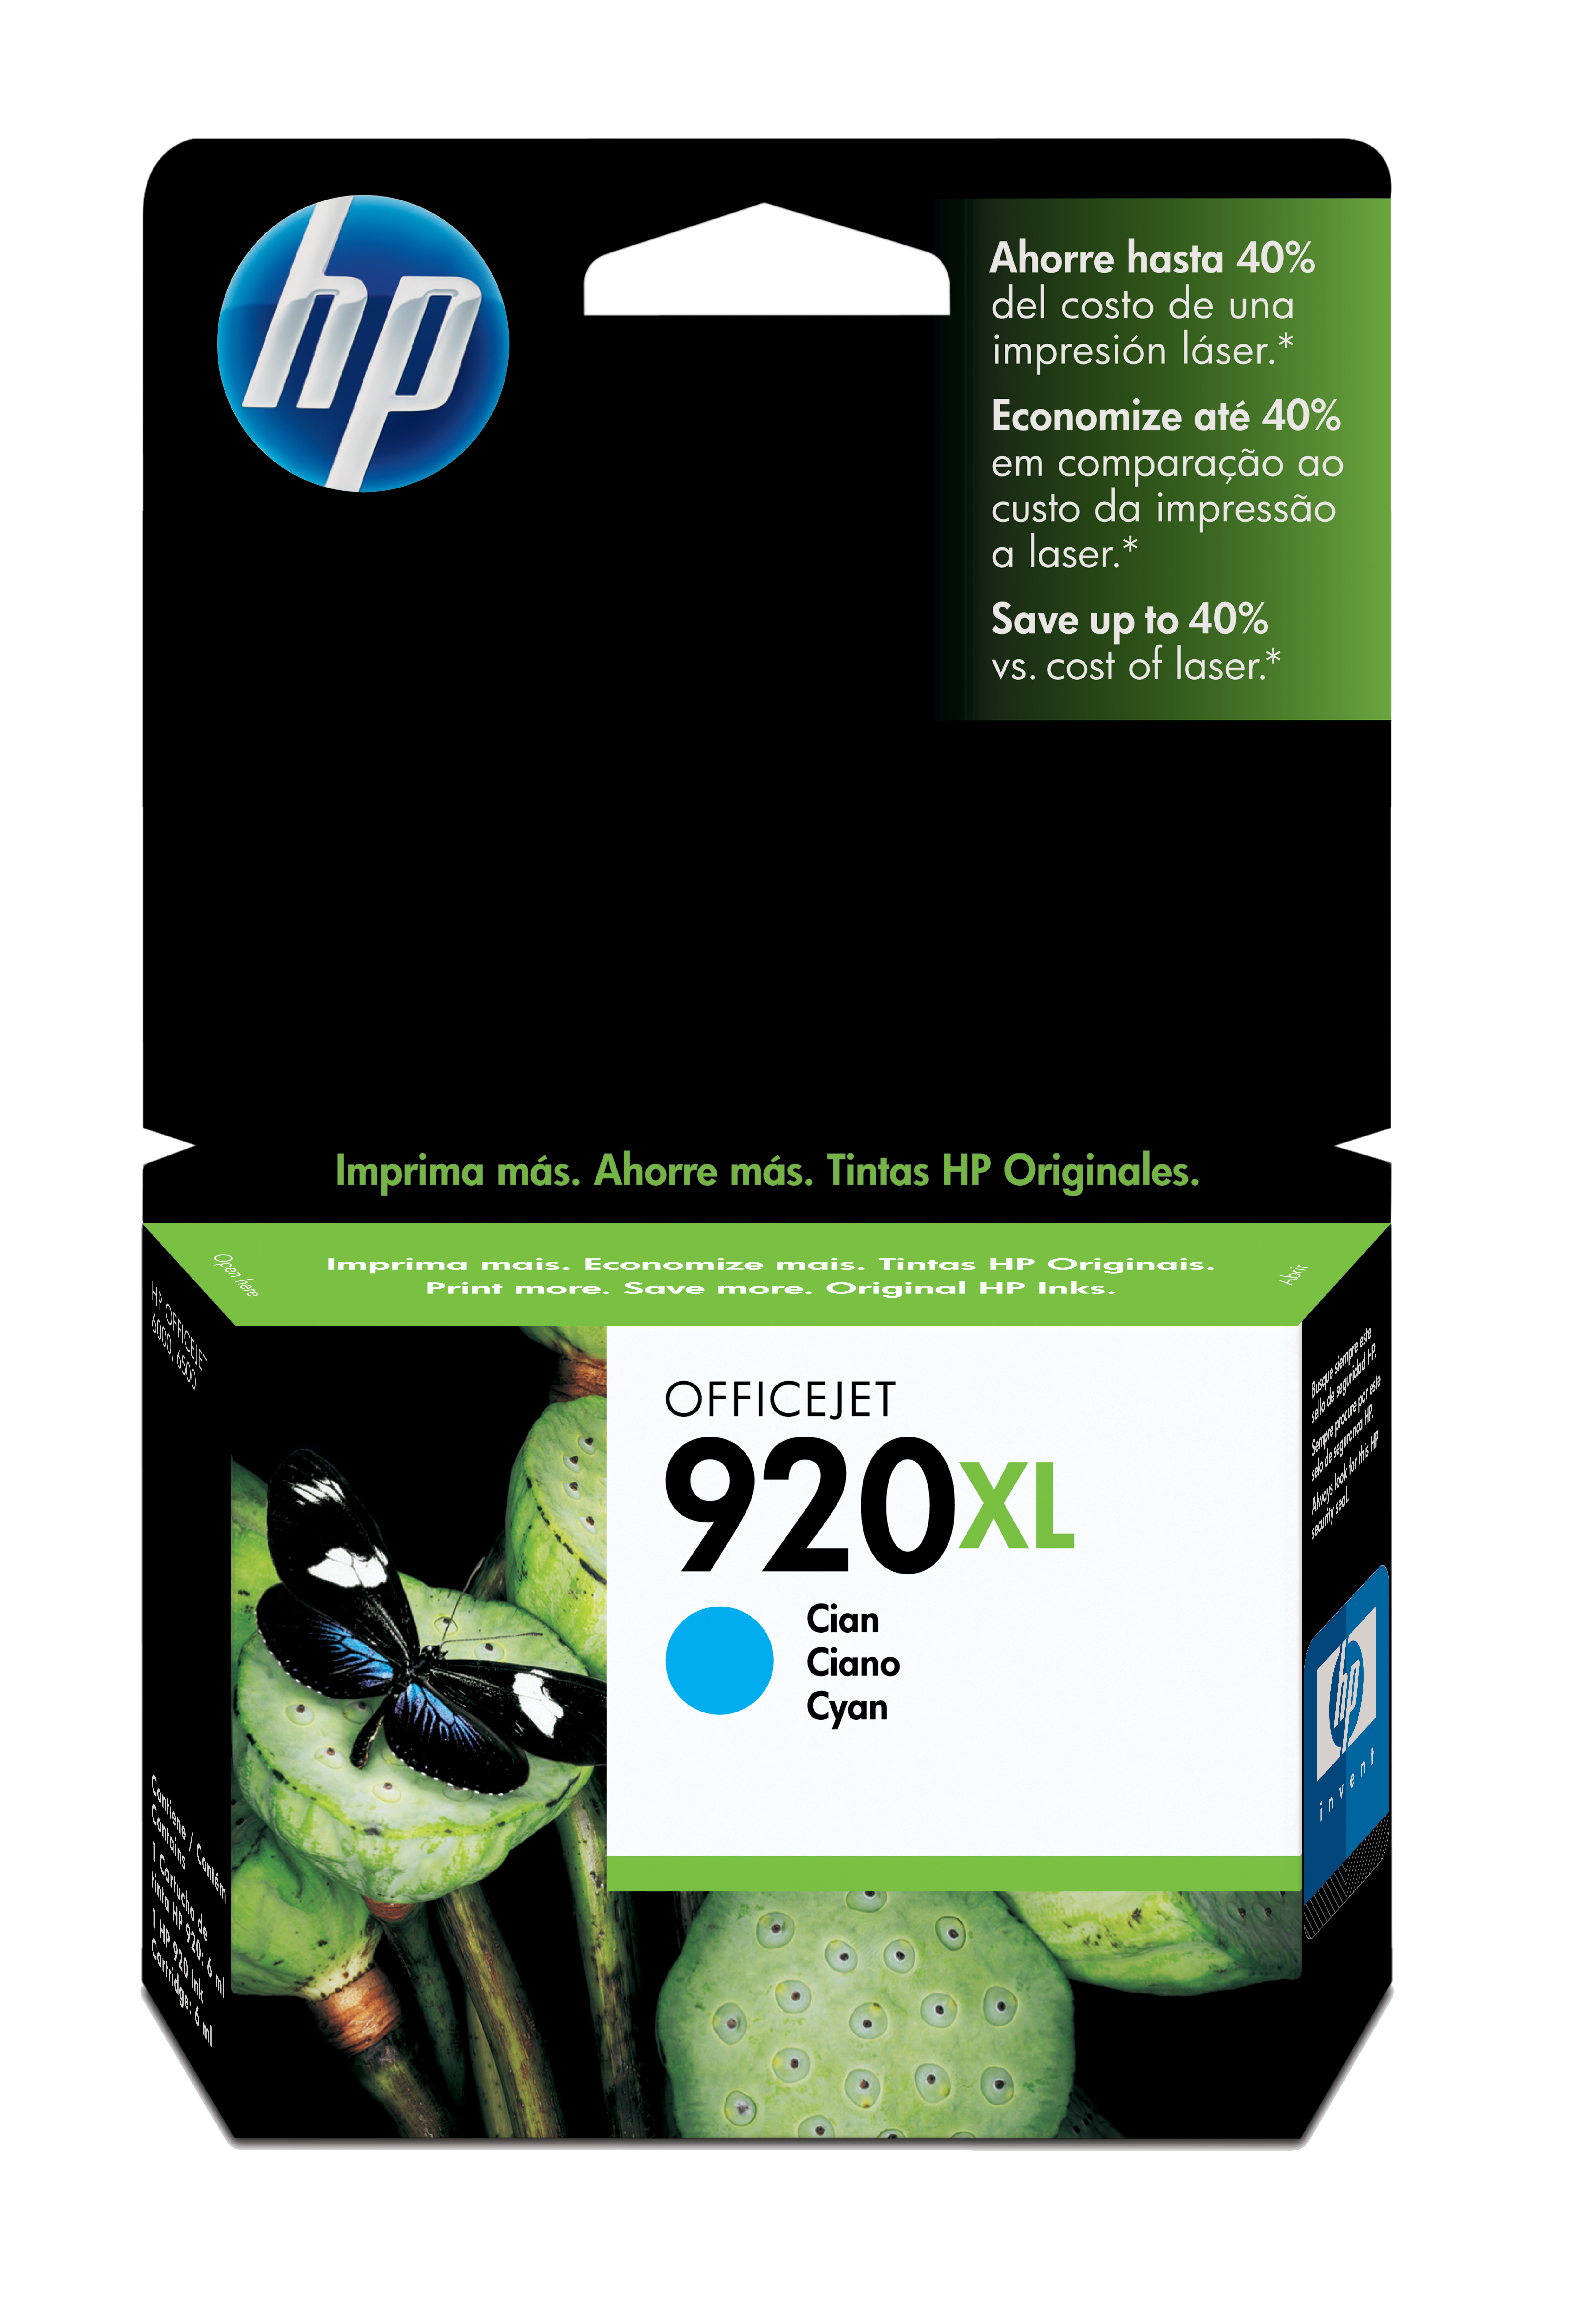 HP 920XL Cyan Officejet Ink Cartridge Genuine HP Inkjet